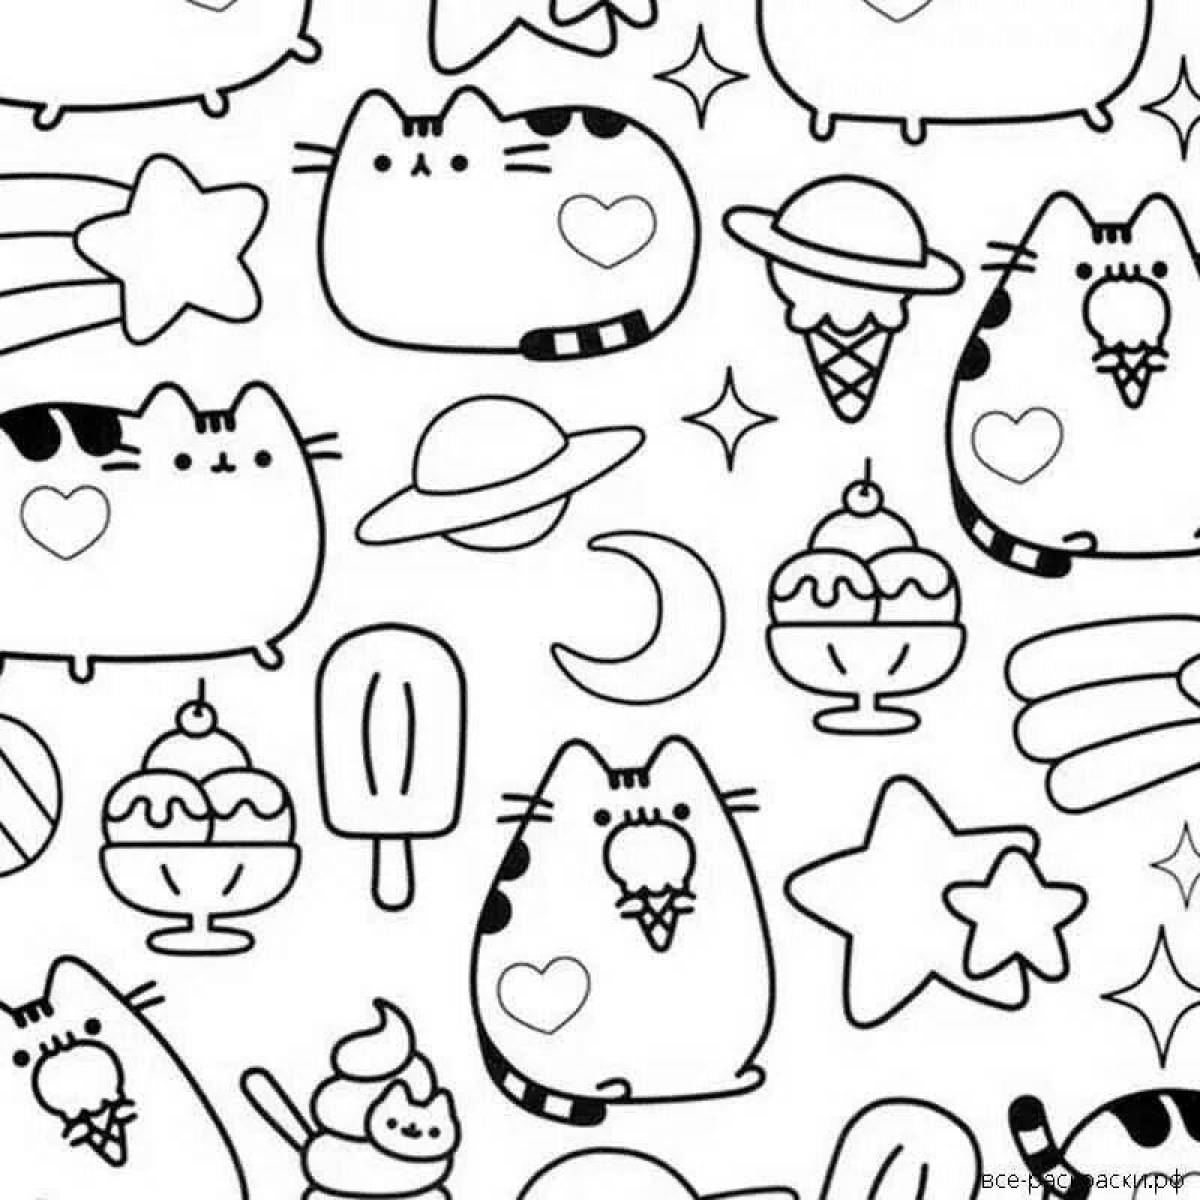 Fluffy kawaii cats coloring book